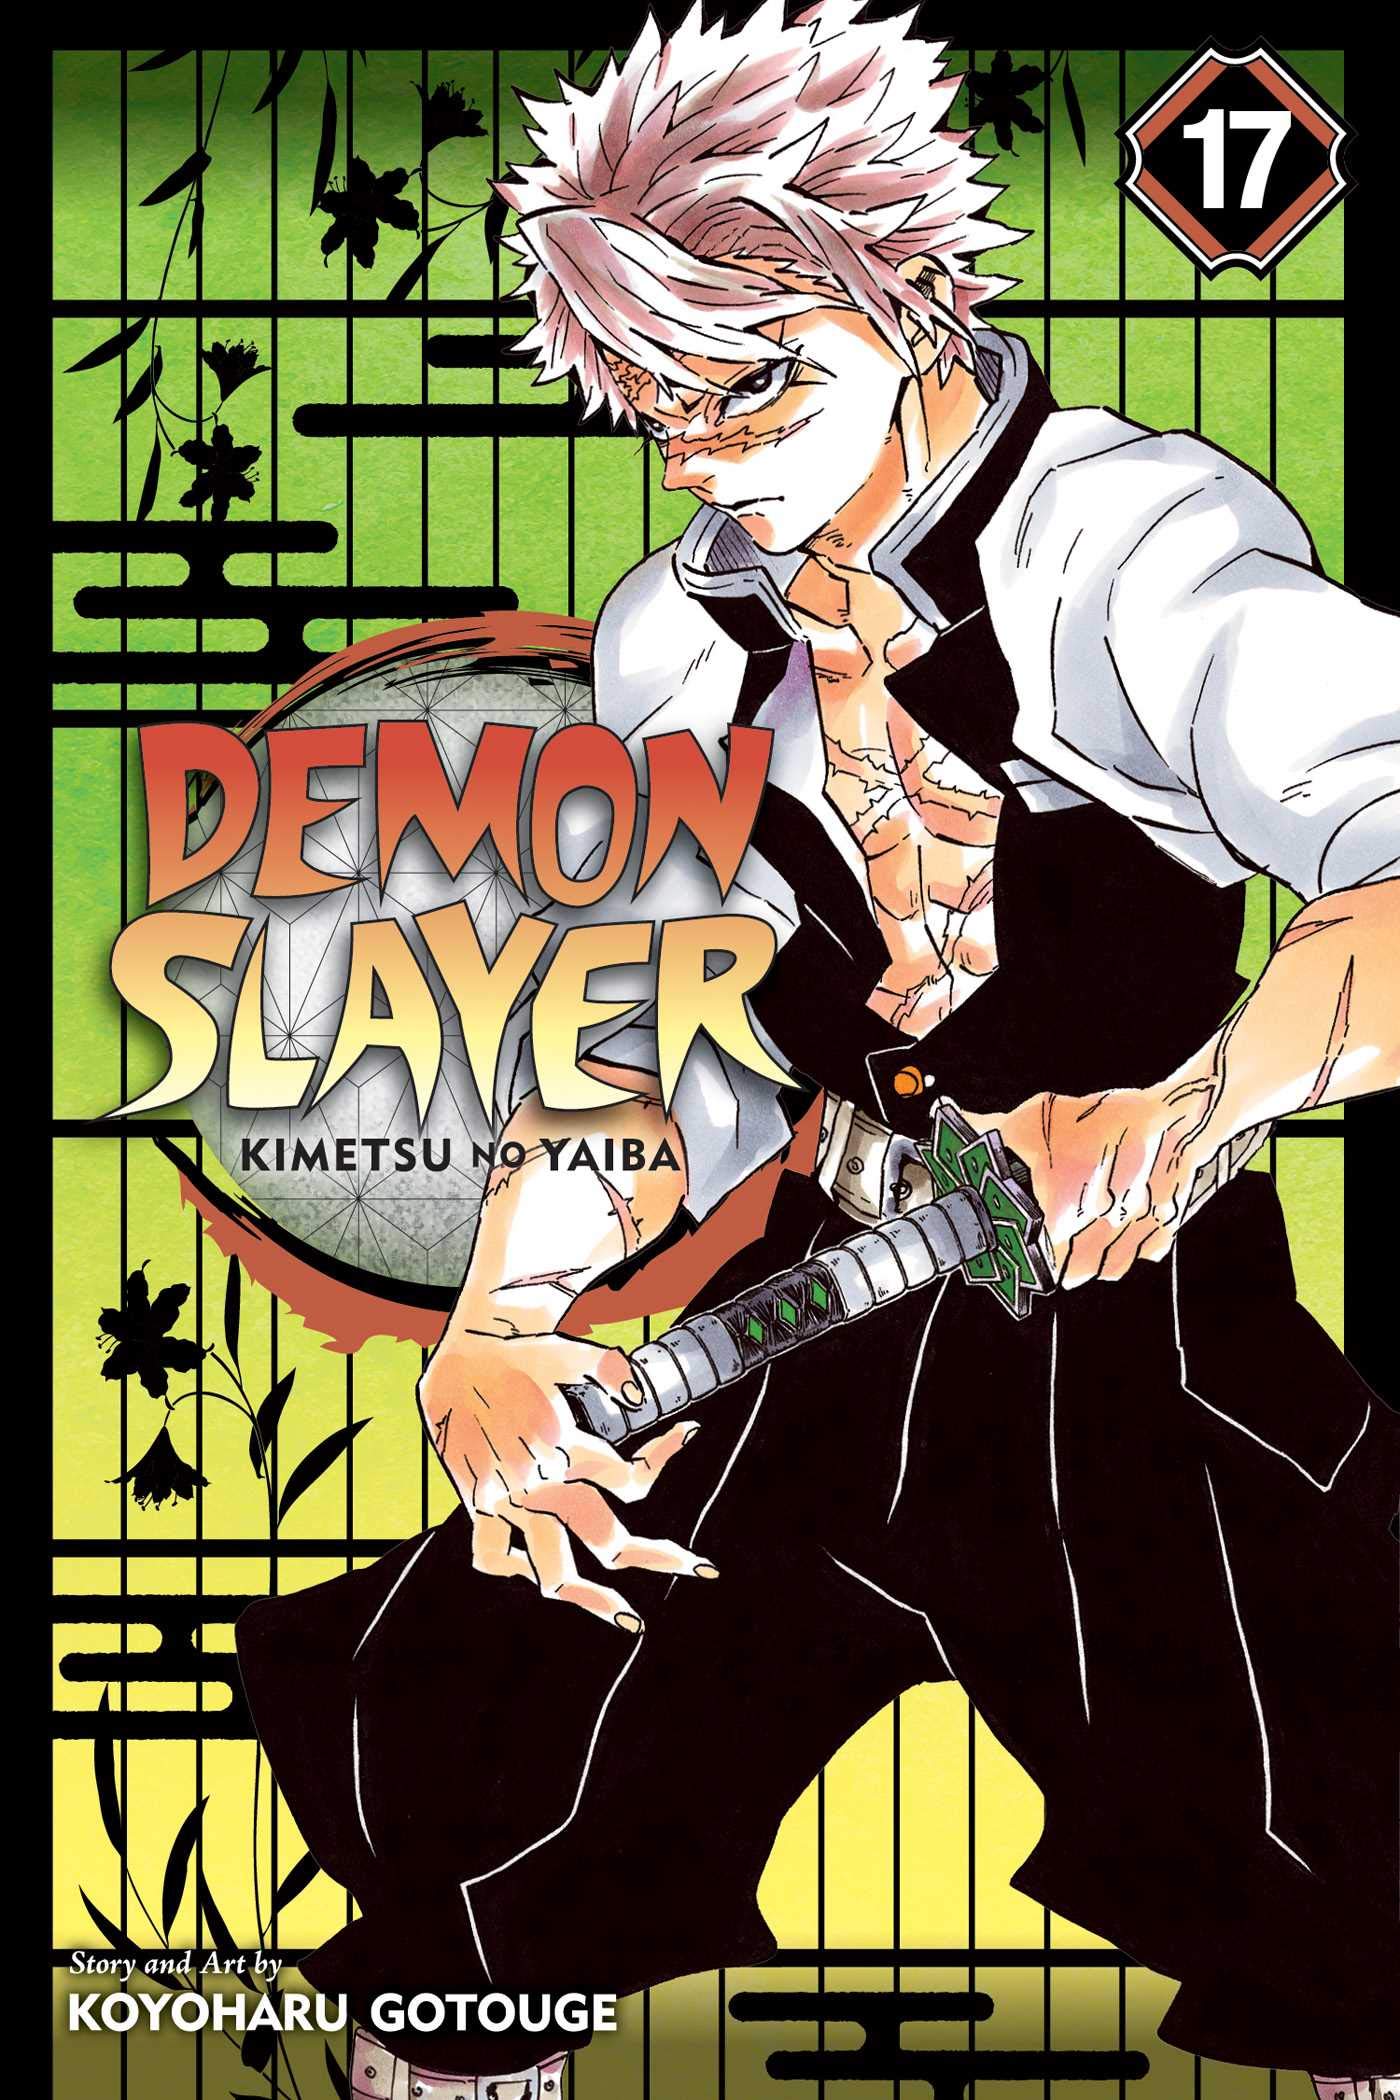 Demon Slayer: Kimetsu no Yaiba, Vol. 17 | Koyoharu Gotouge